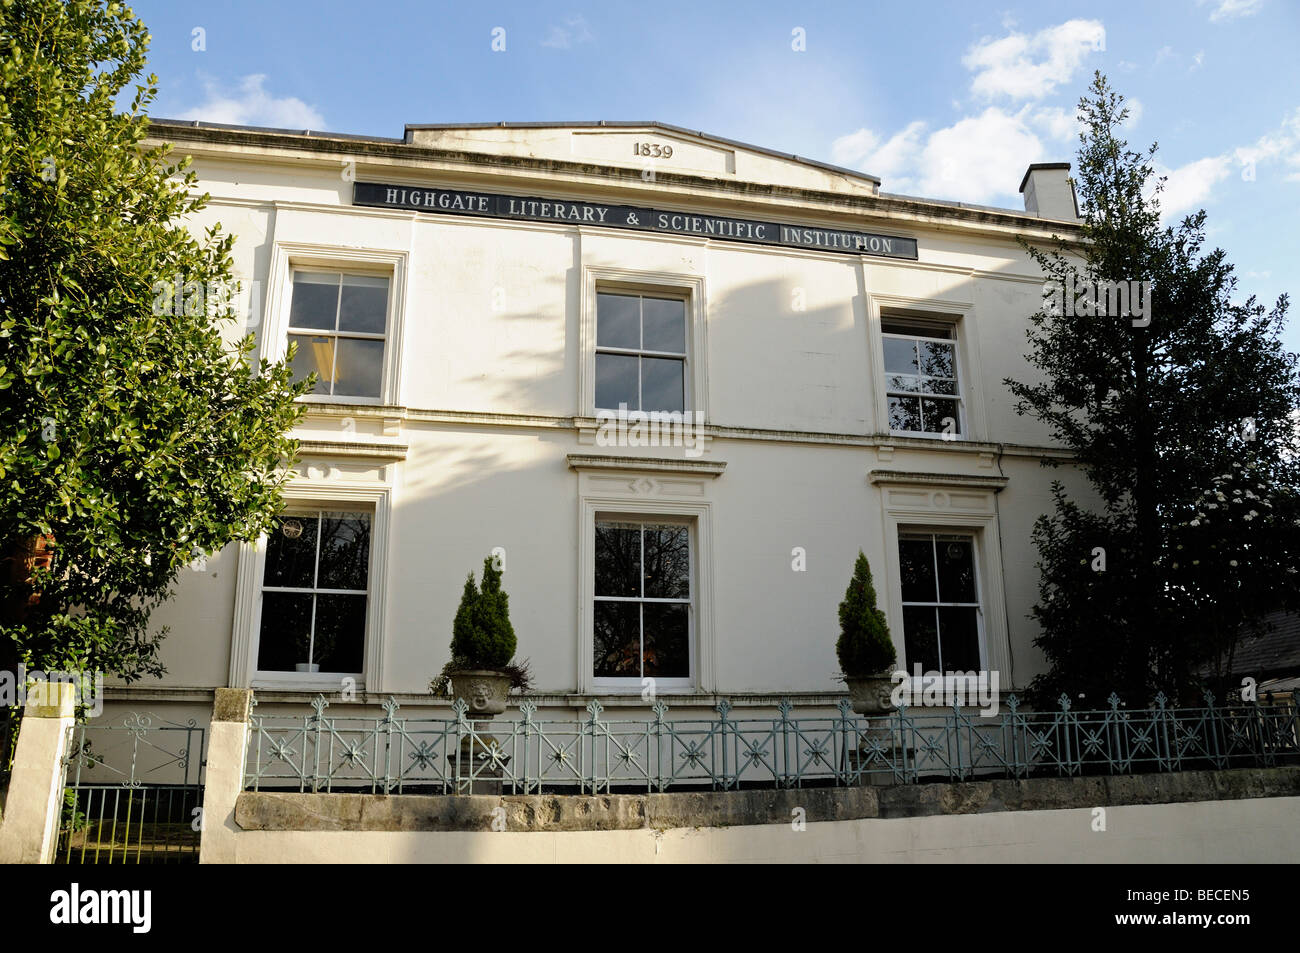 Institution scientifique et littéraire de Highgate Pond Square Highgate Village London England UK Banque D'Images